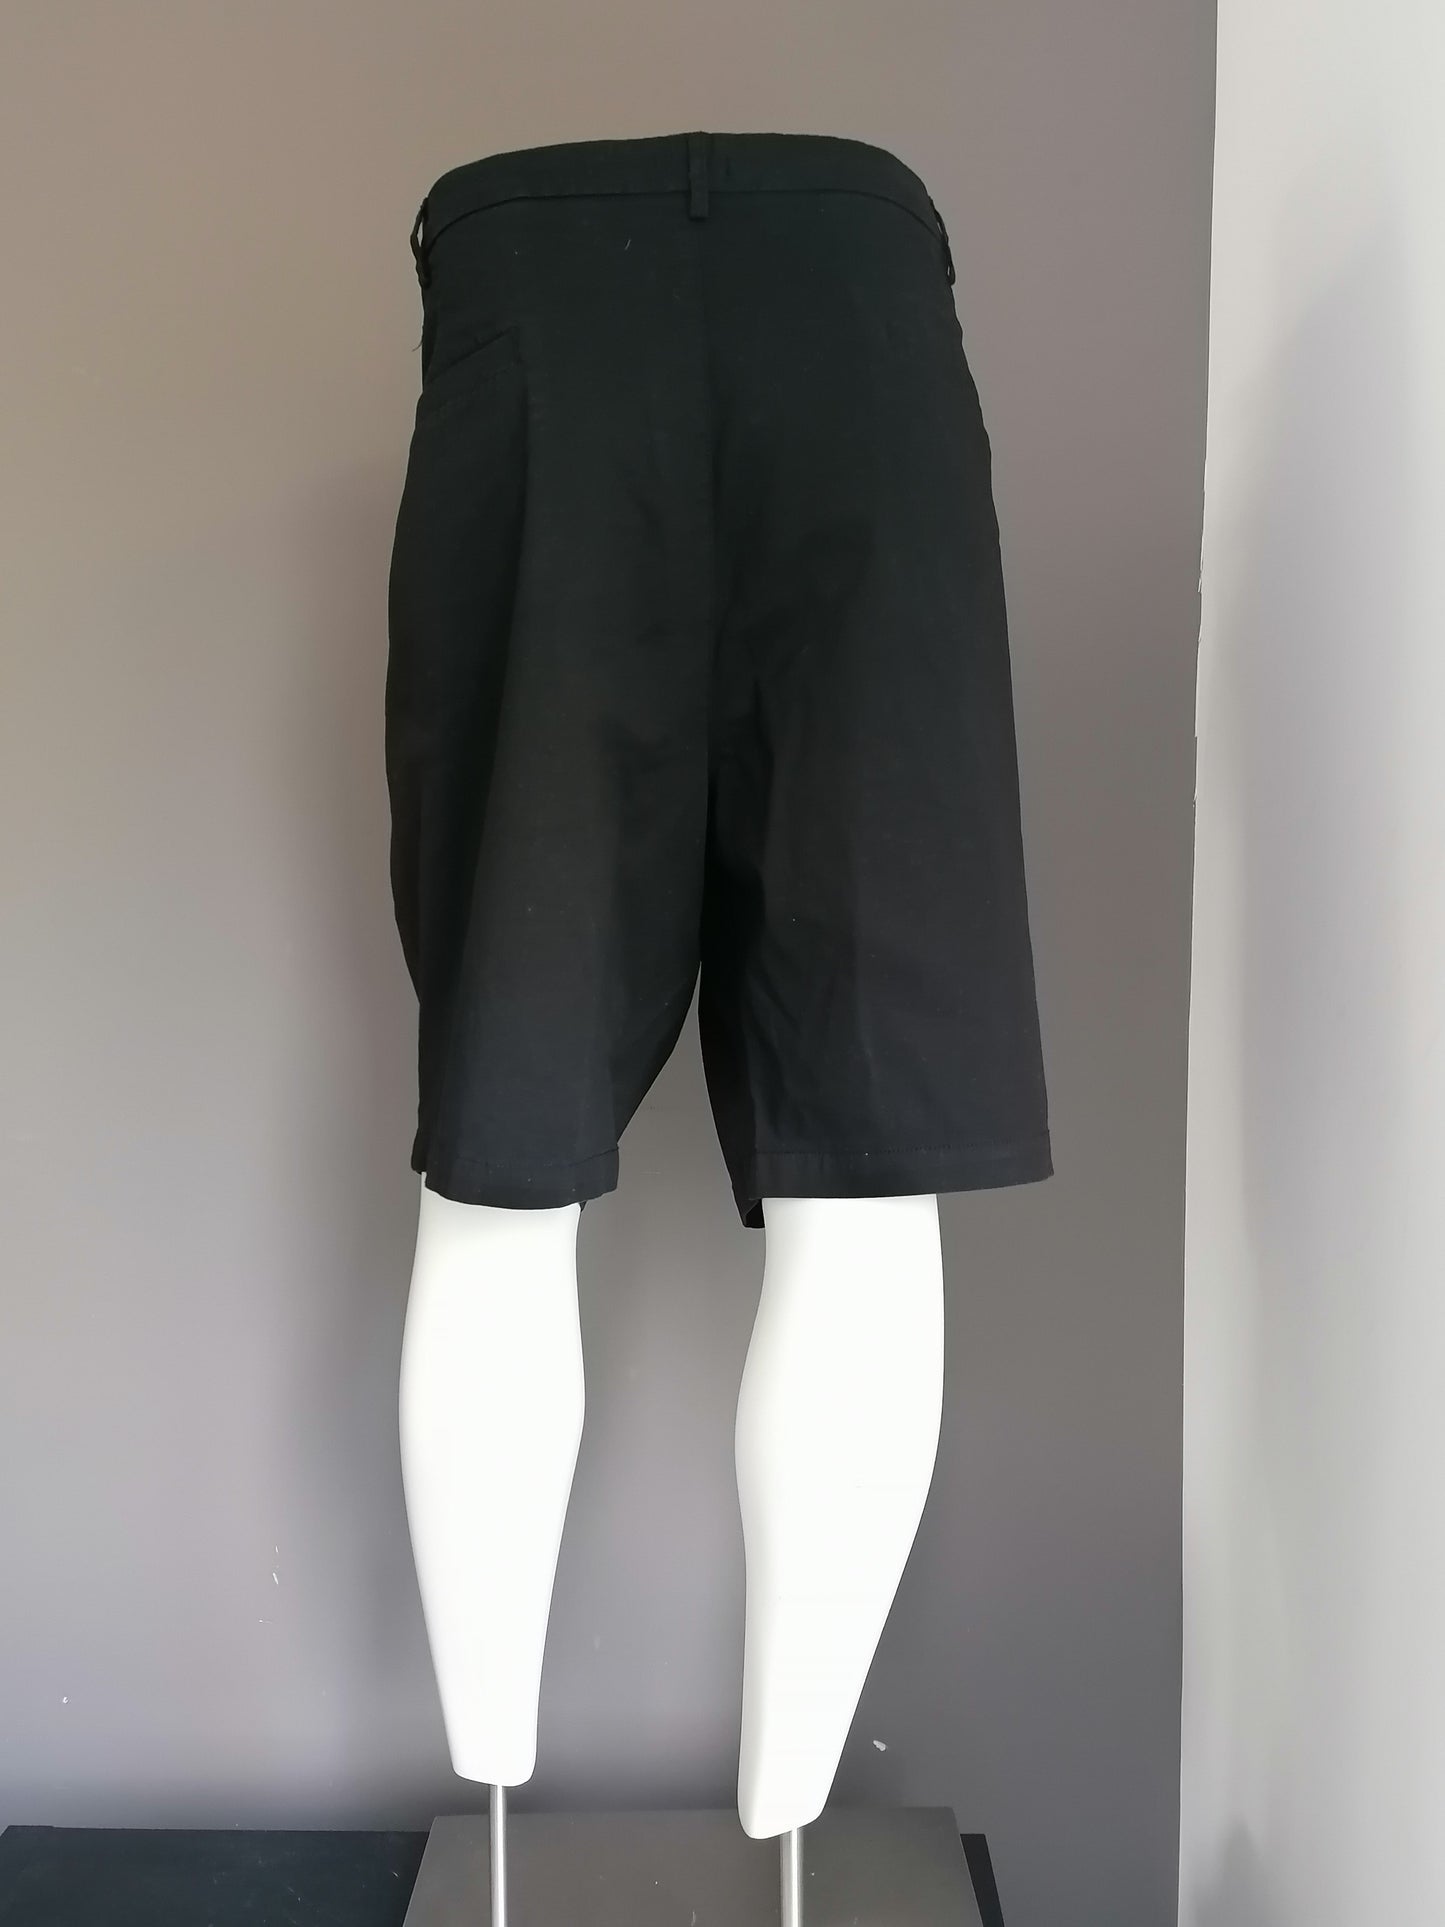 Kapselmänner Shorts. Schwarz gefärbt. Größe W54. Strecken